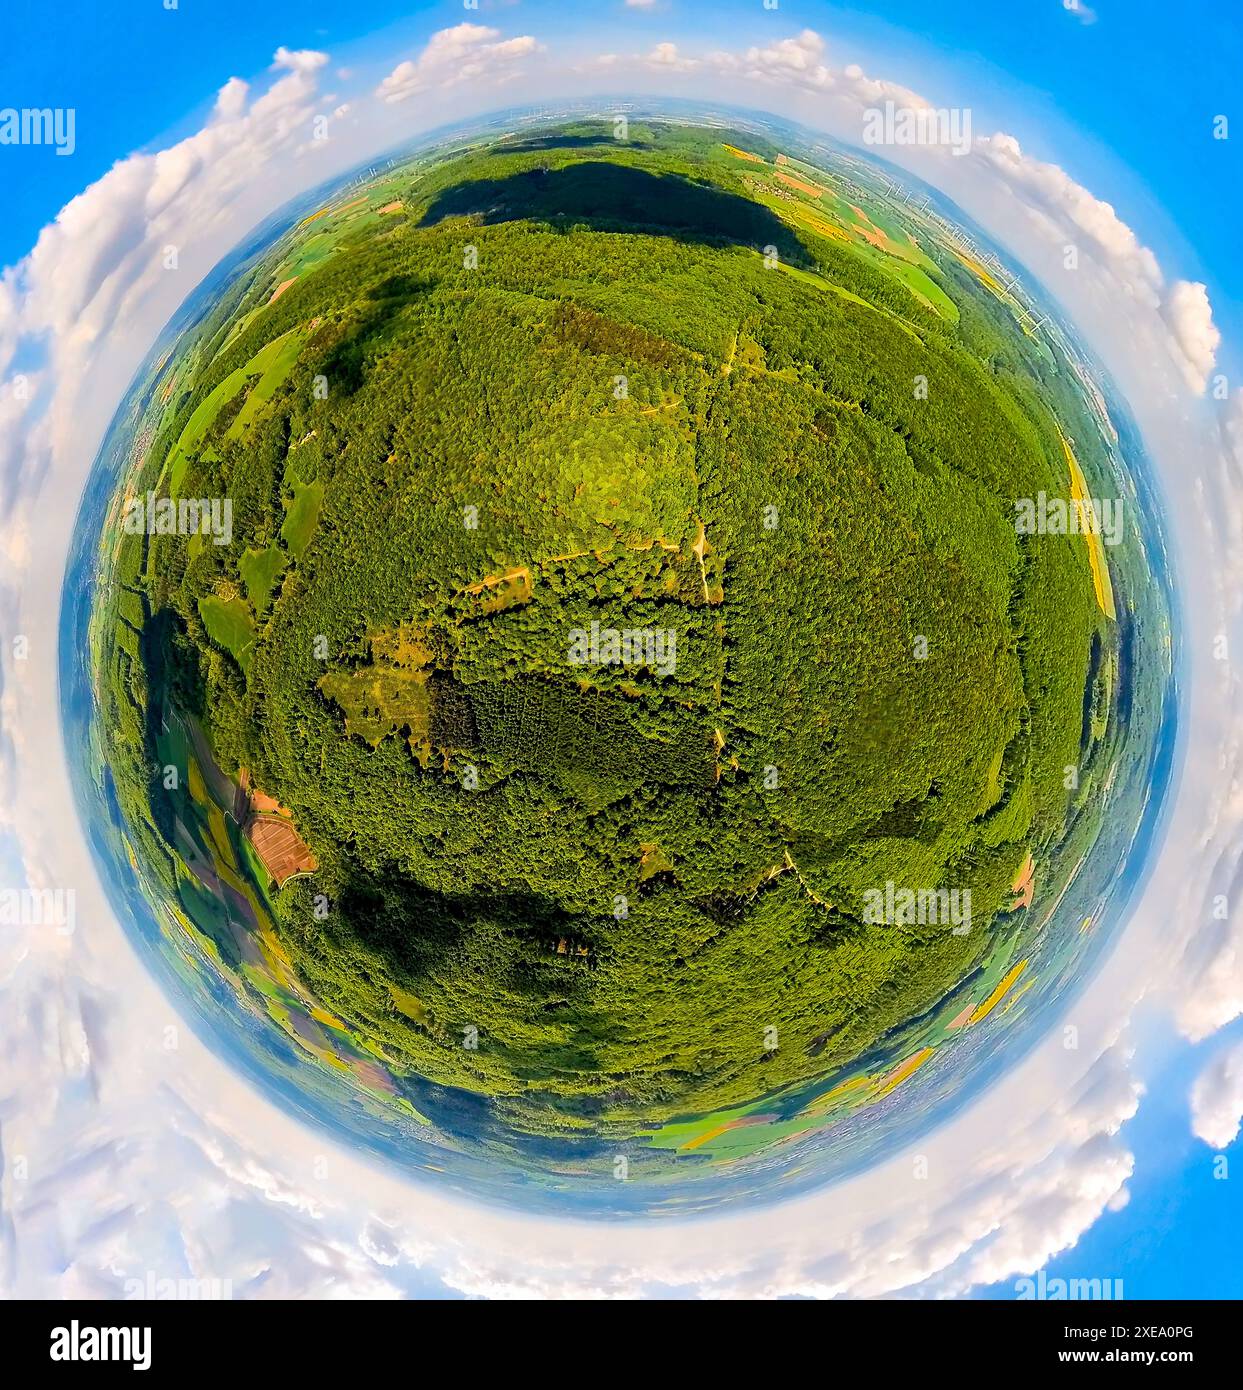 Vista aerea, riserva naturale Hinnenburger Forst con Emder Bachtal, area forestale con prati e campi, globo terrestre, immagine fisheye, immagine a 360 gradi, Foto Stock